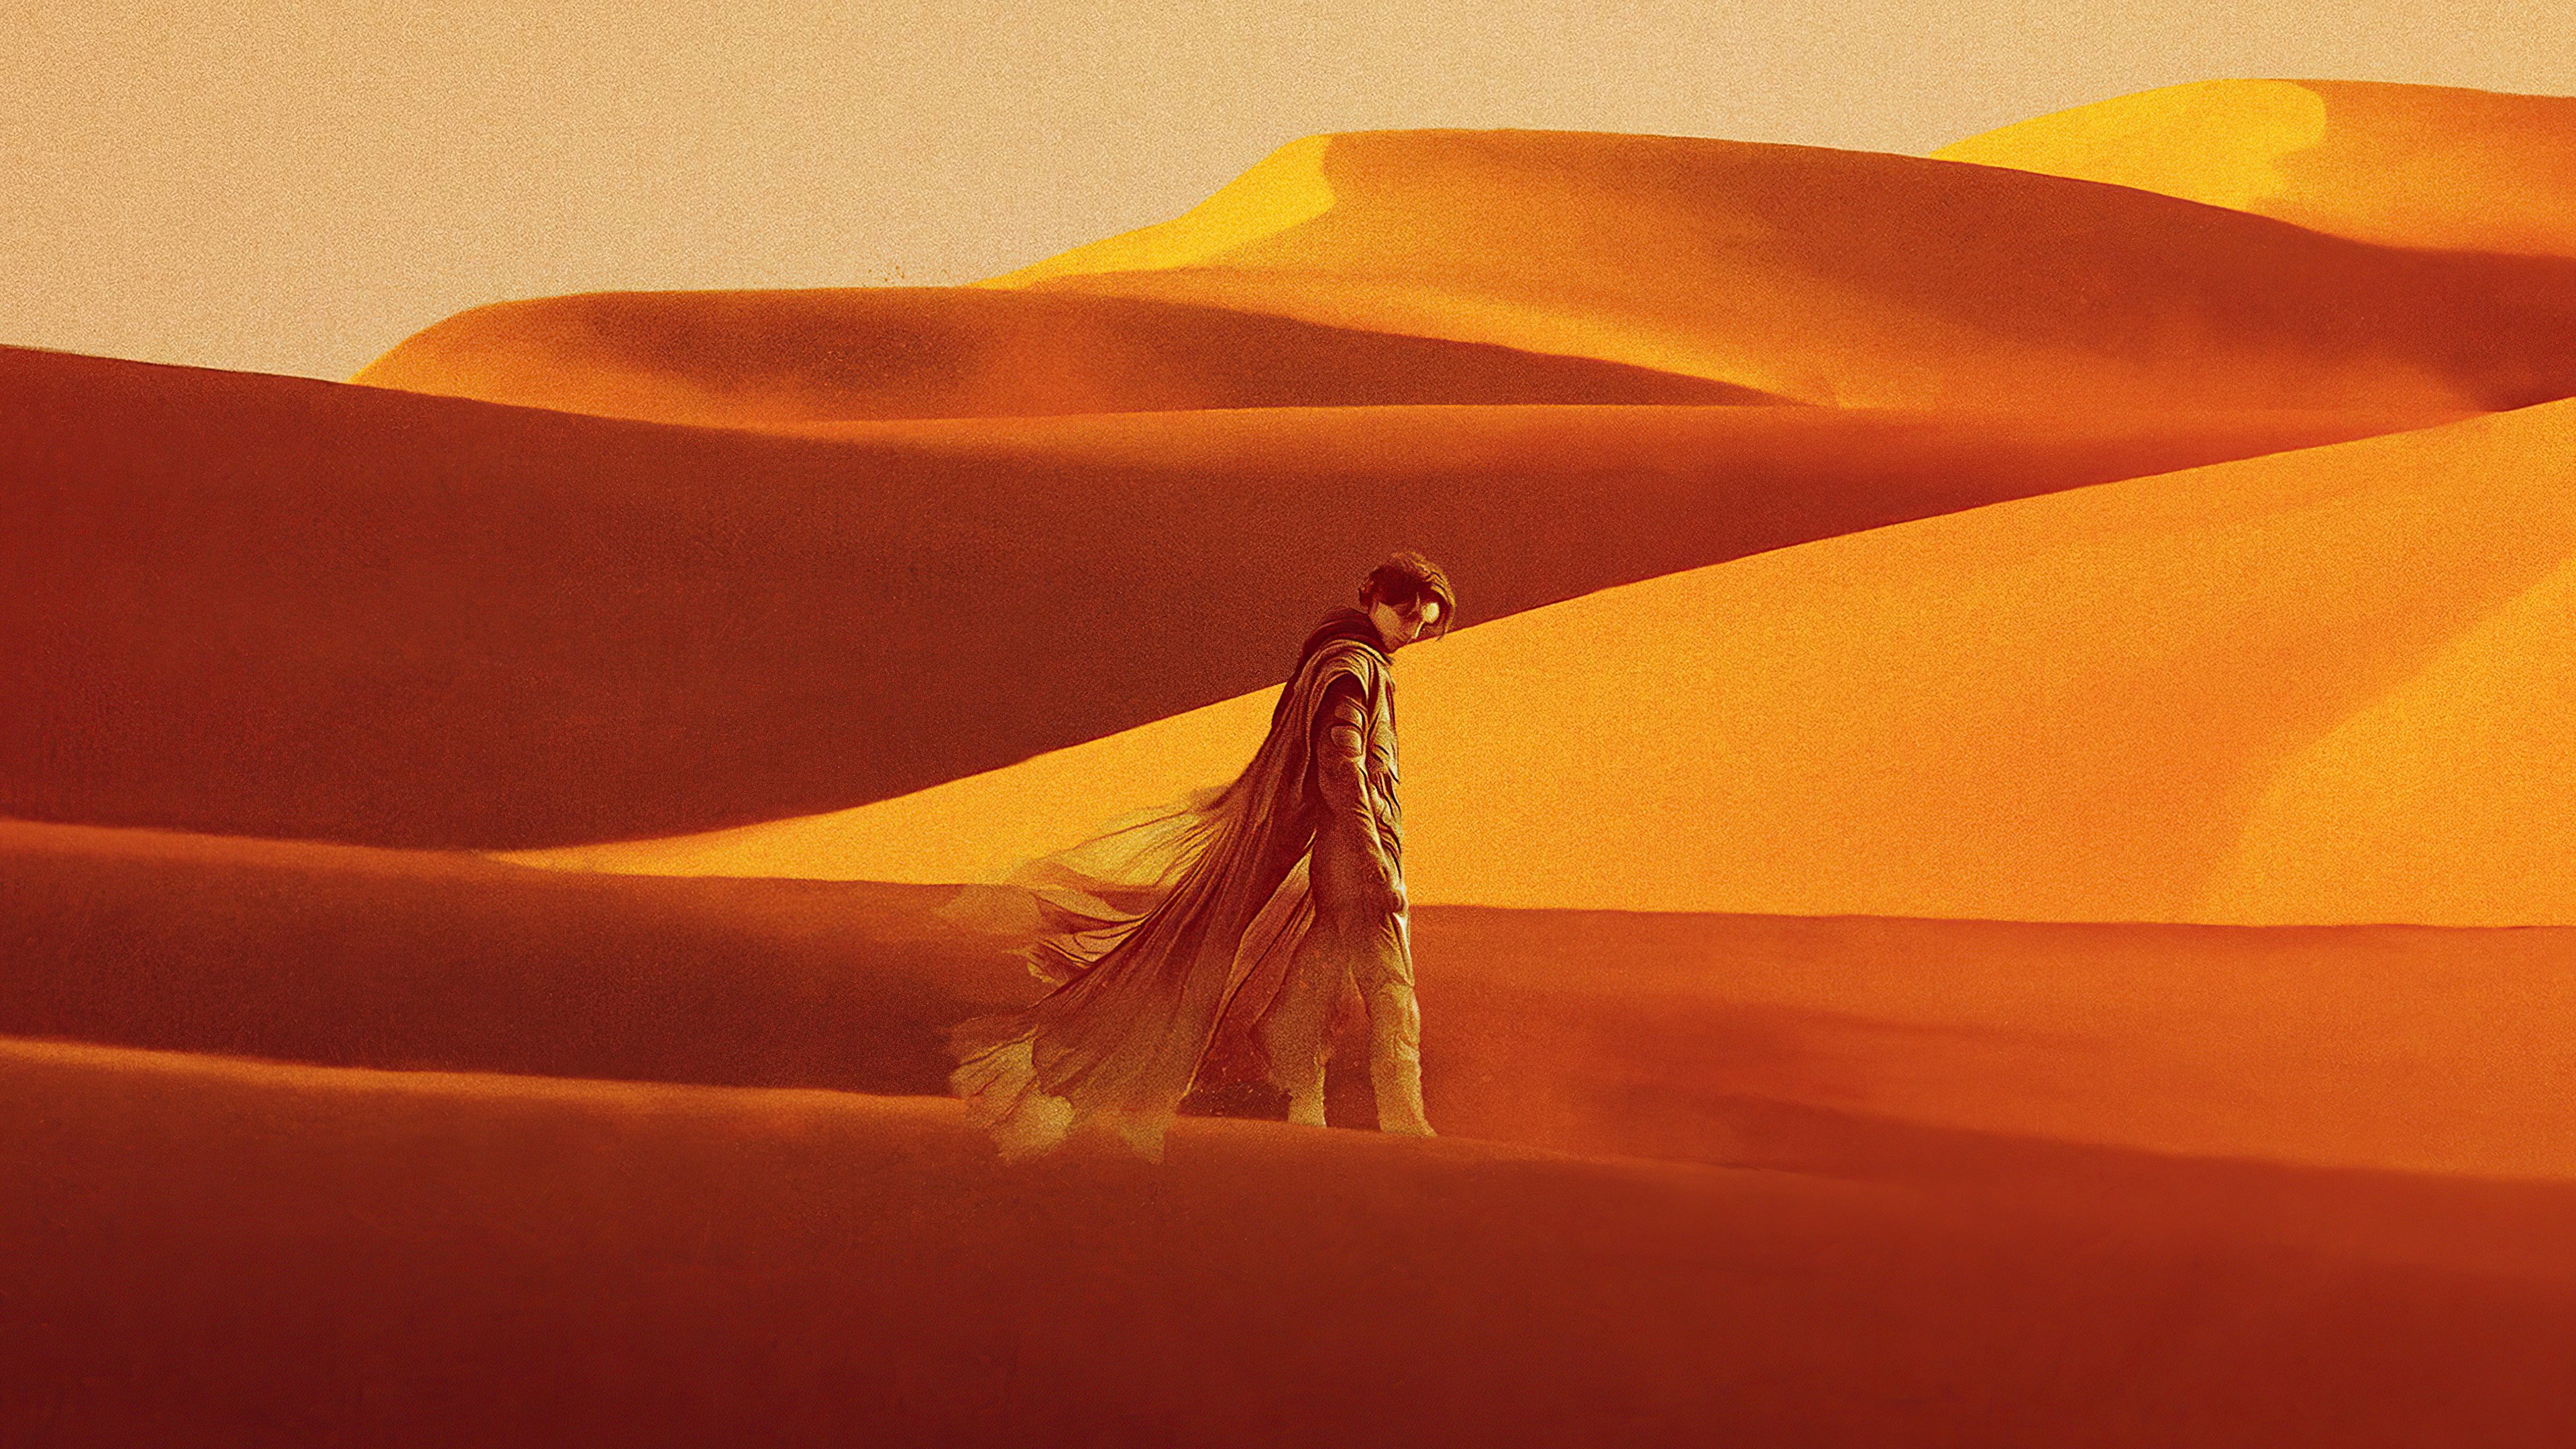 Fondos de pantalla Timothee Chalamet en Dune